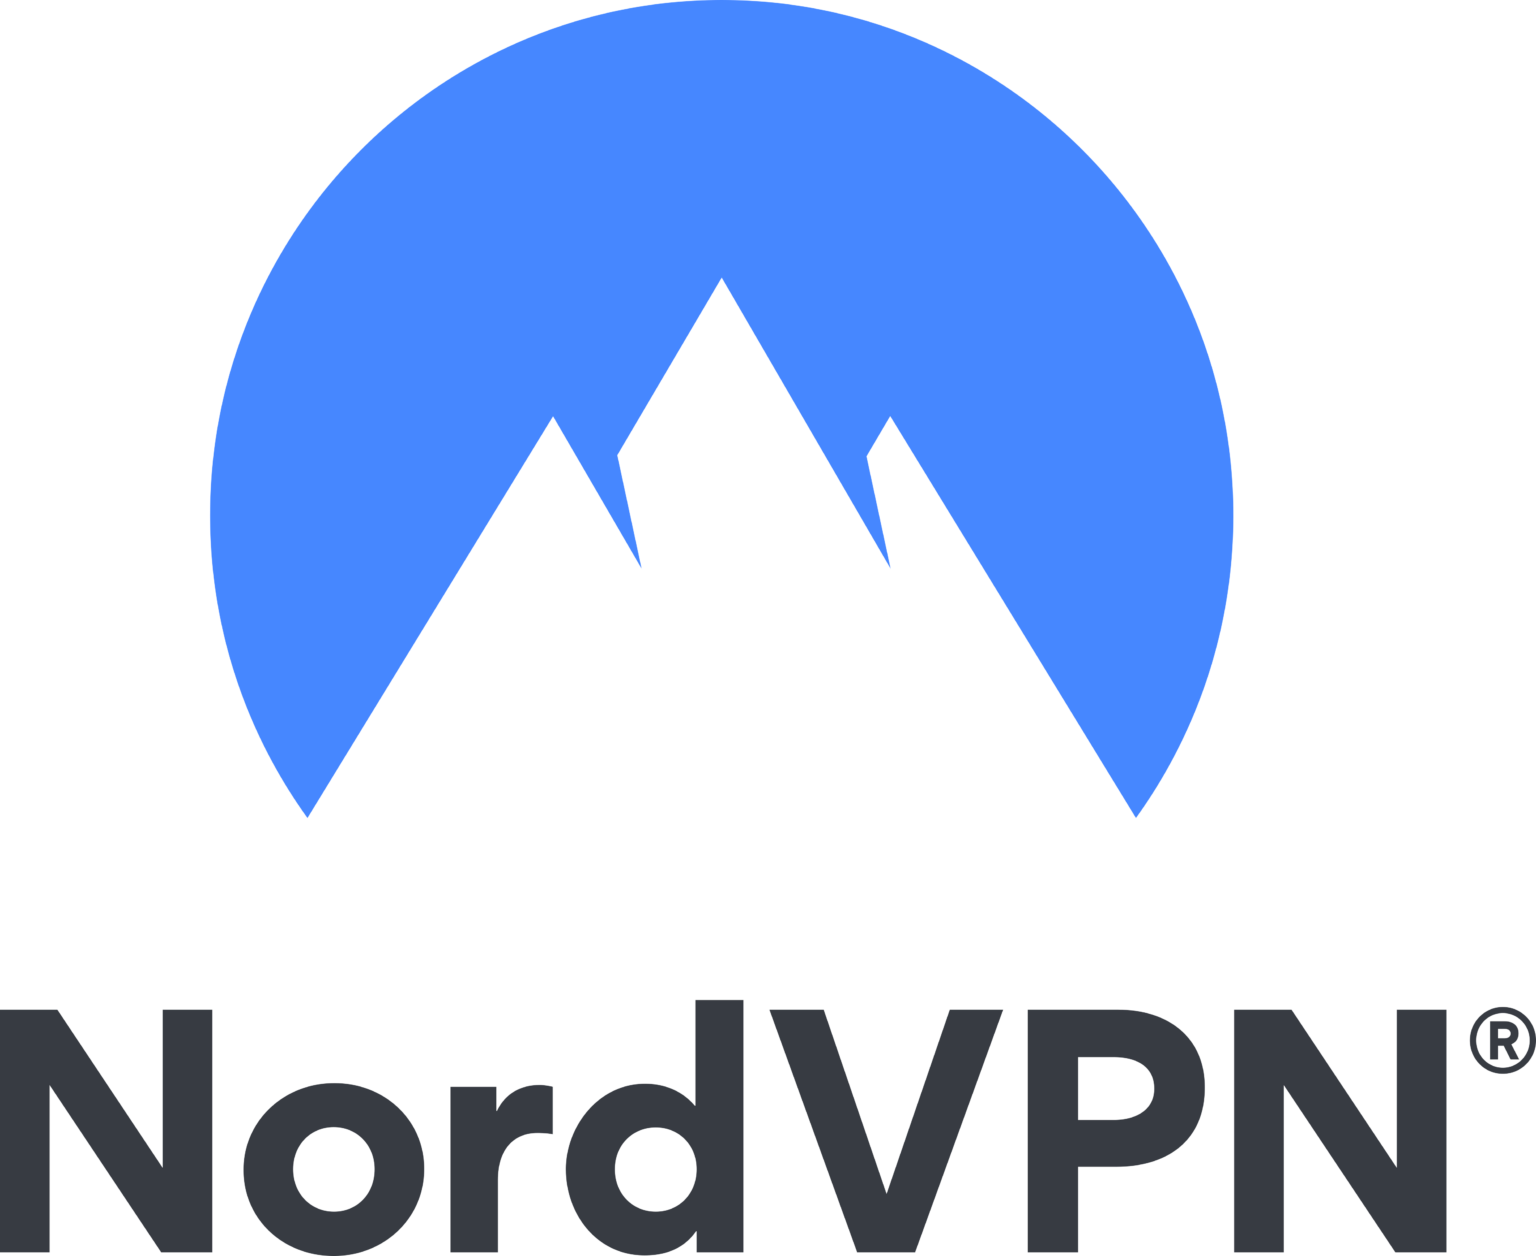 nordvpn uk download